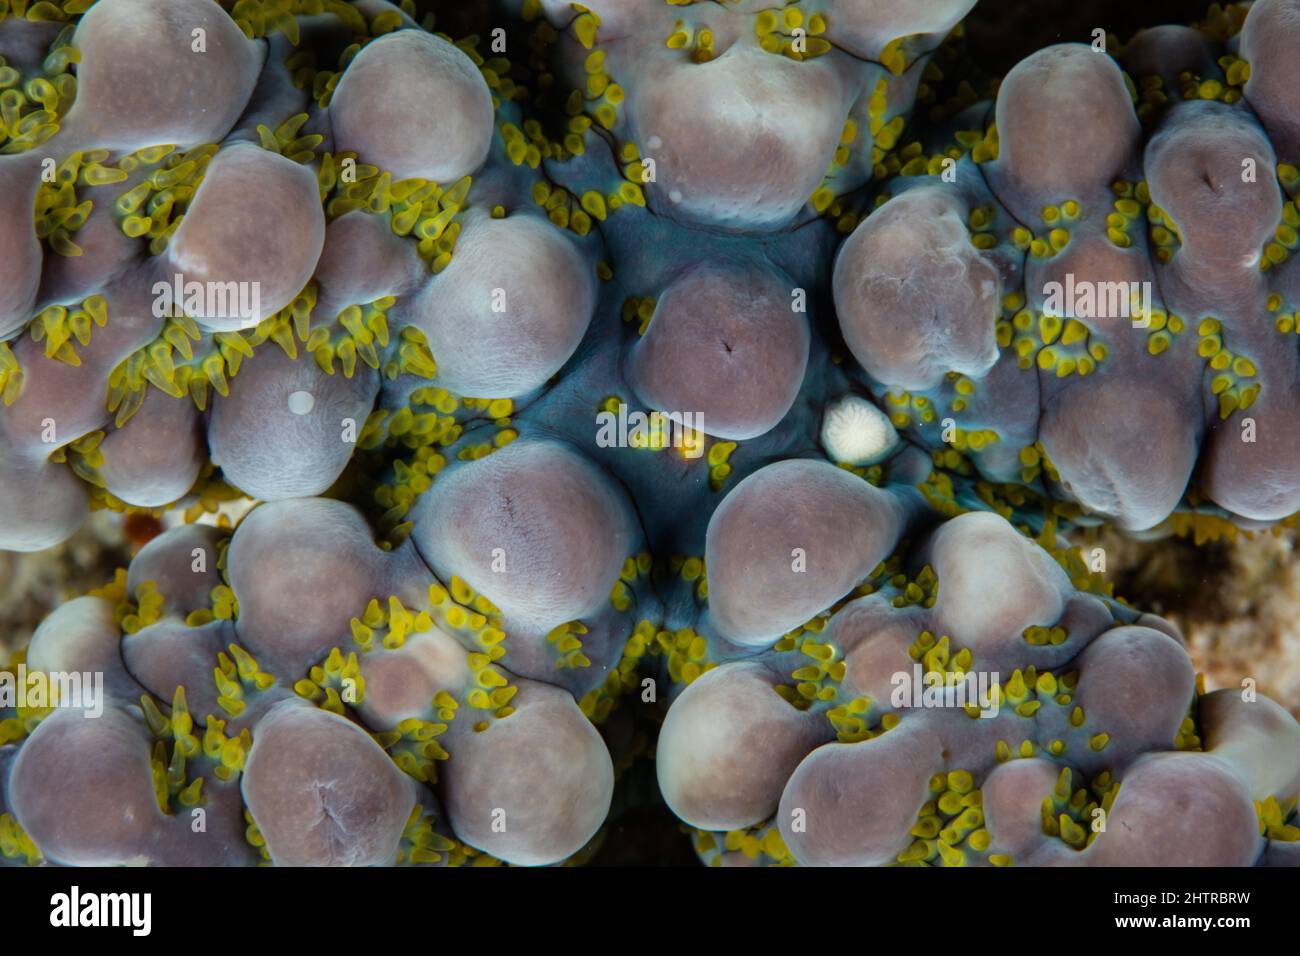 Dettaglio su una stella del mare di Warty, Echinaster callosus, che vive su una barriera corallina in Indonesia. Questa specie di echinoderm è molto variabile nel colore. Foto Stock